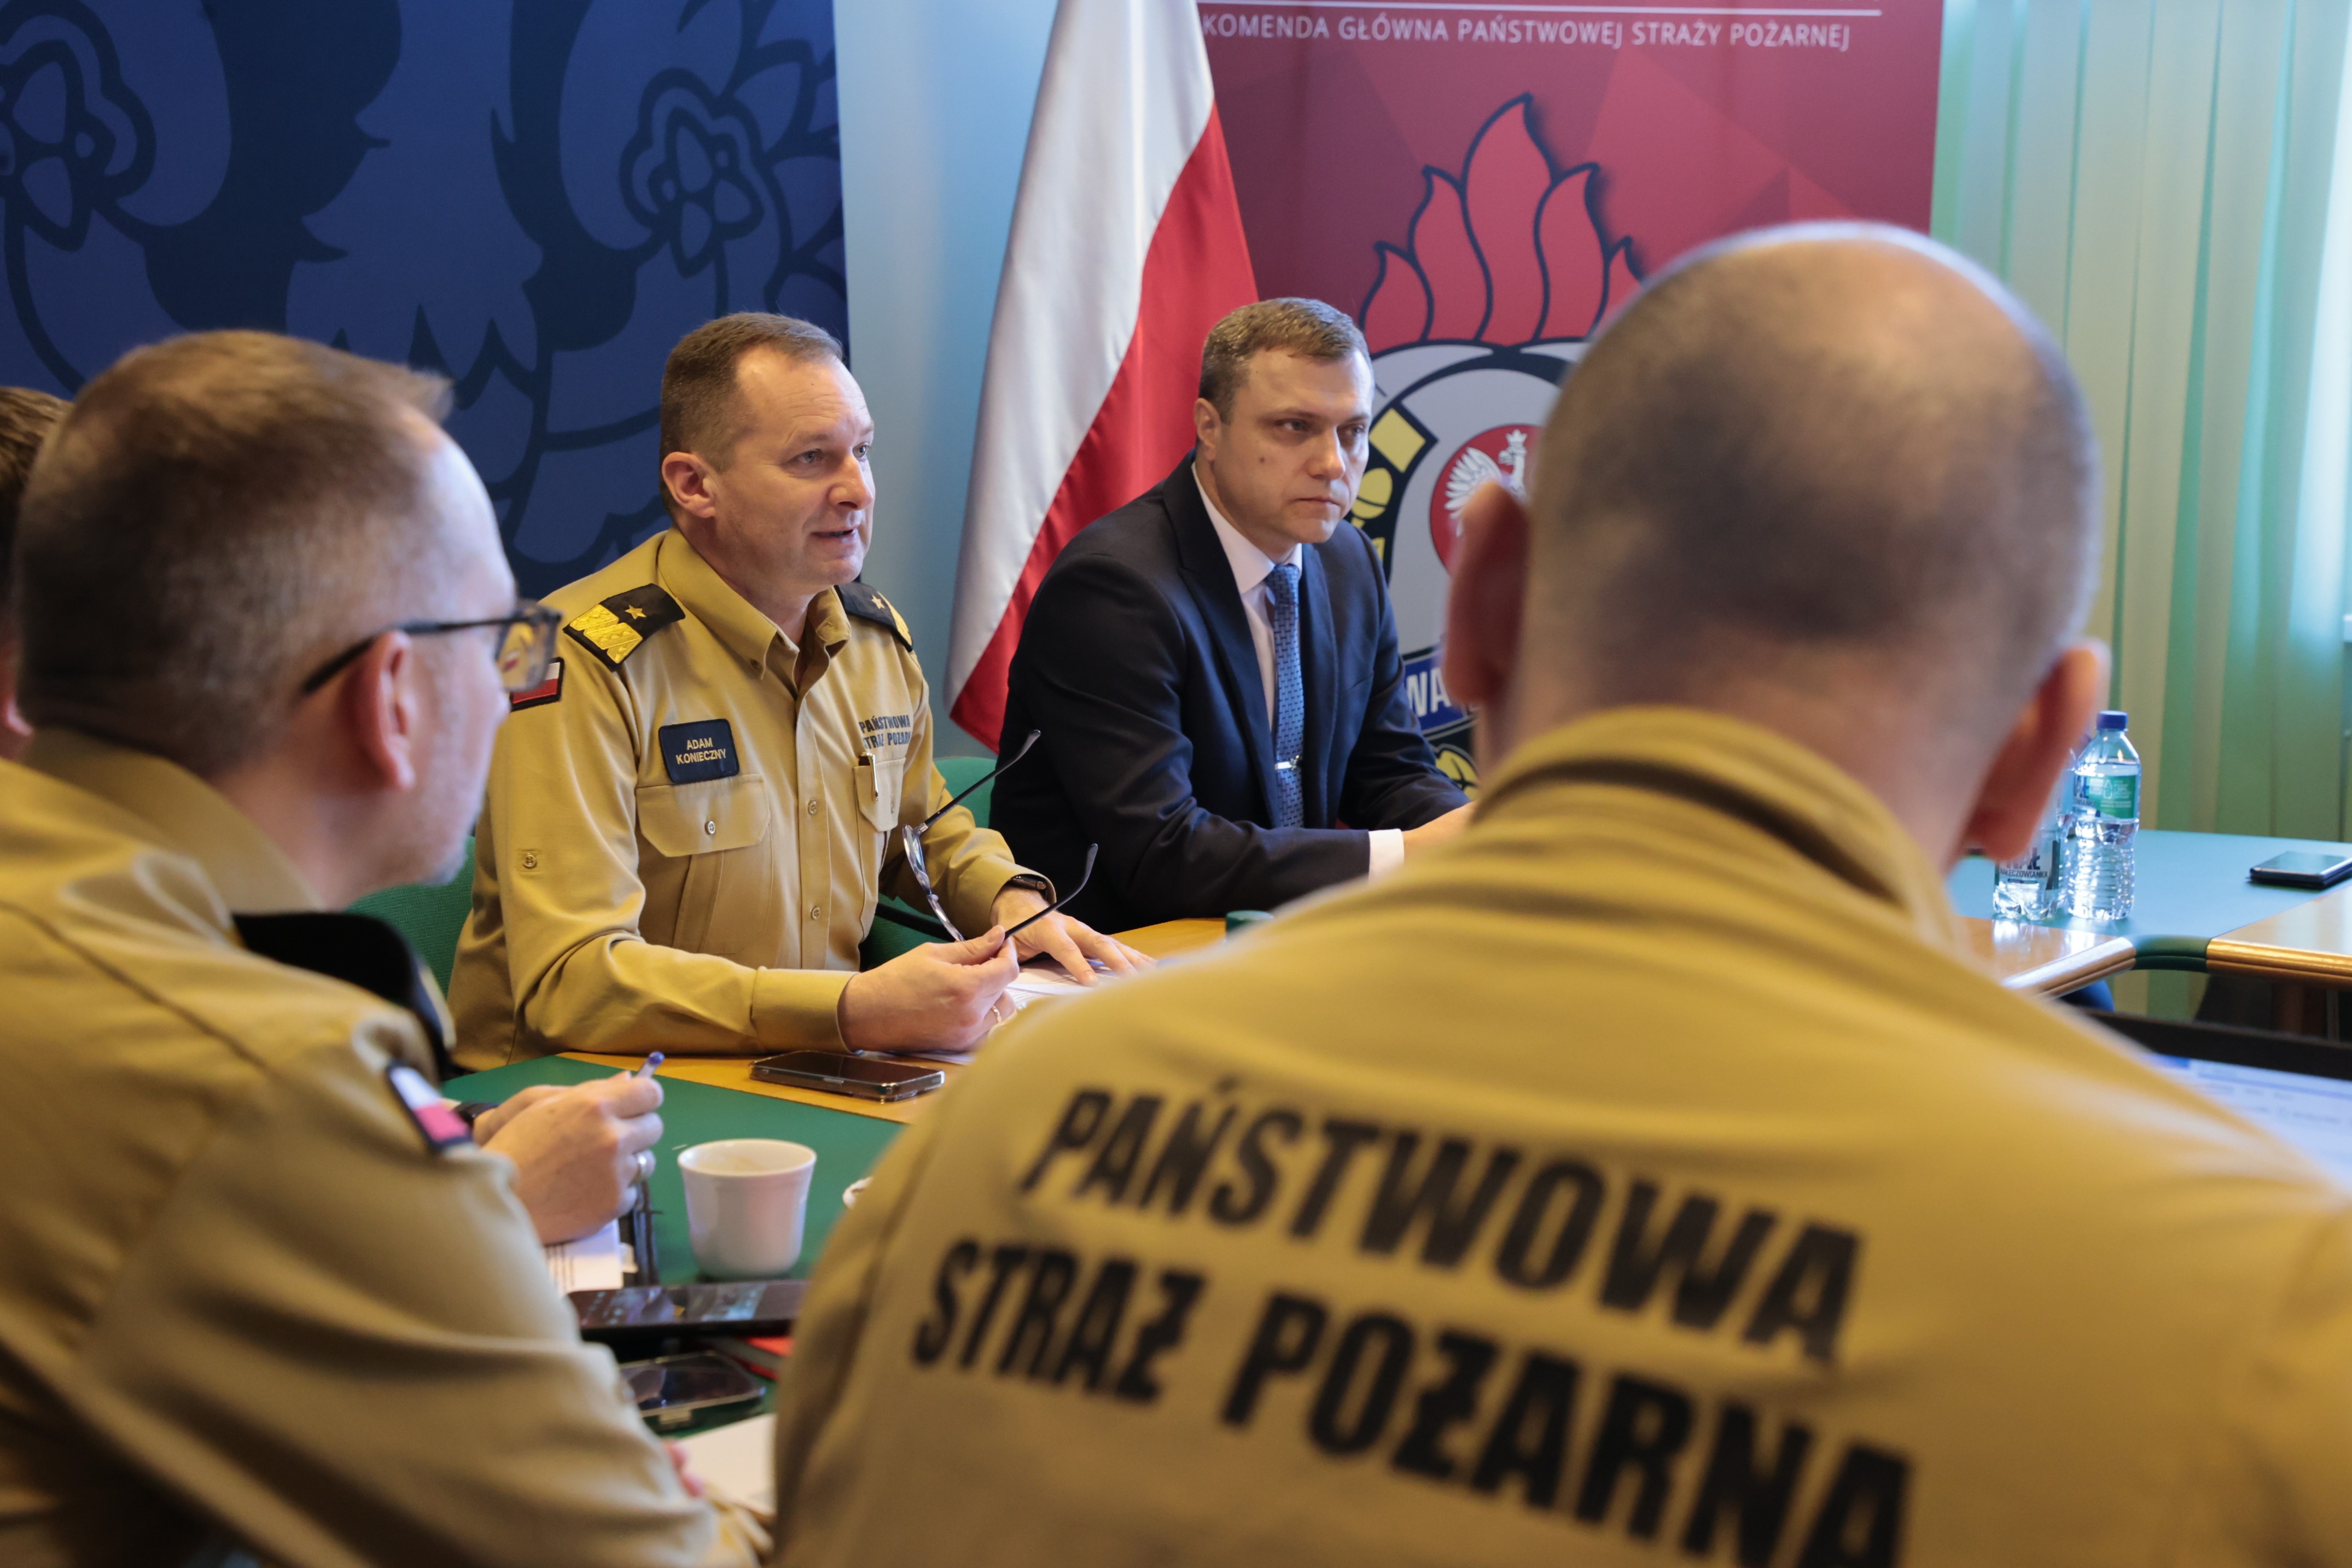 Dwóch strażaków siedzi podczas spotkania (widok z tyłu), między nimi widoczni zastępca komendanta głównego PSP wspólnie z przedstawicielem czeskiej delegacji siedzą przy stole prezydialnym.